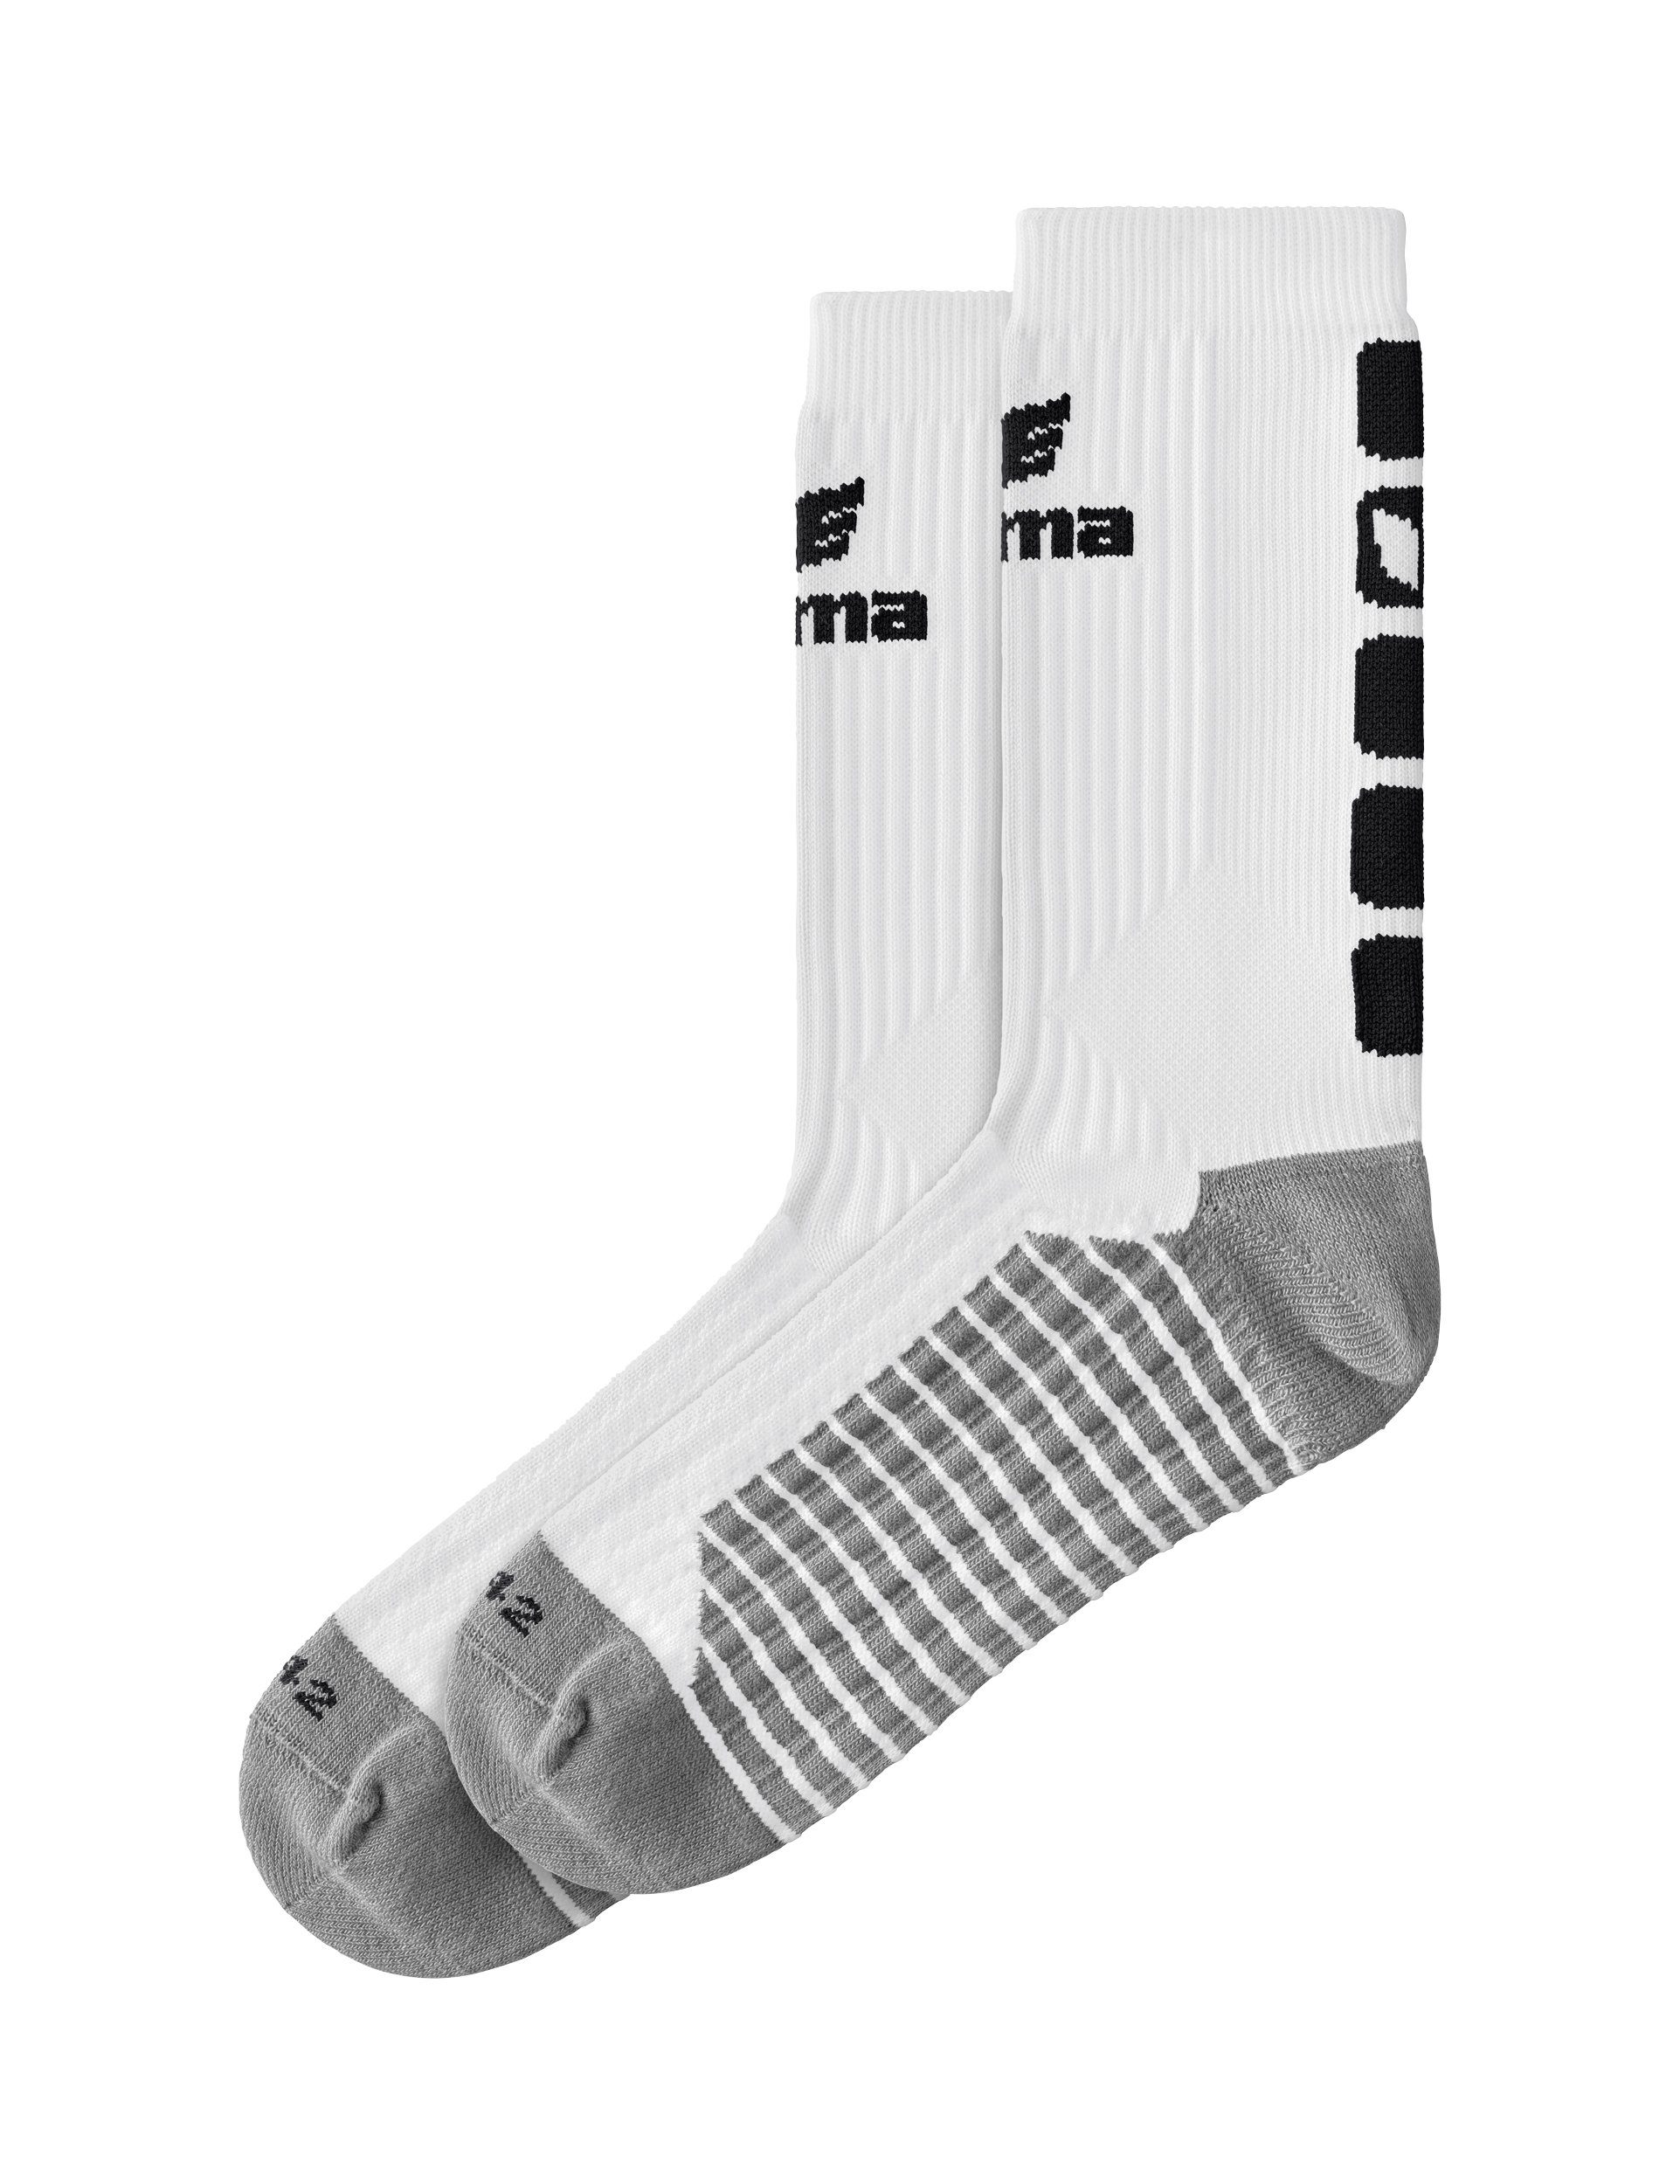 Sportsocken white/black Erima 5-C socks